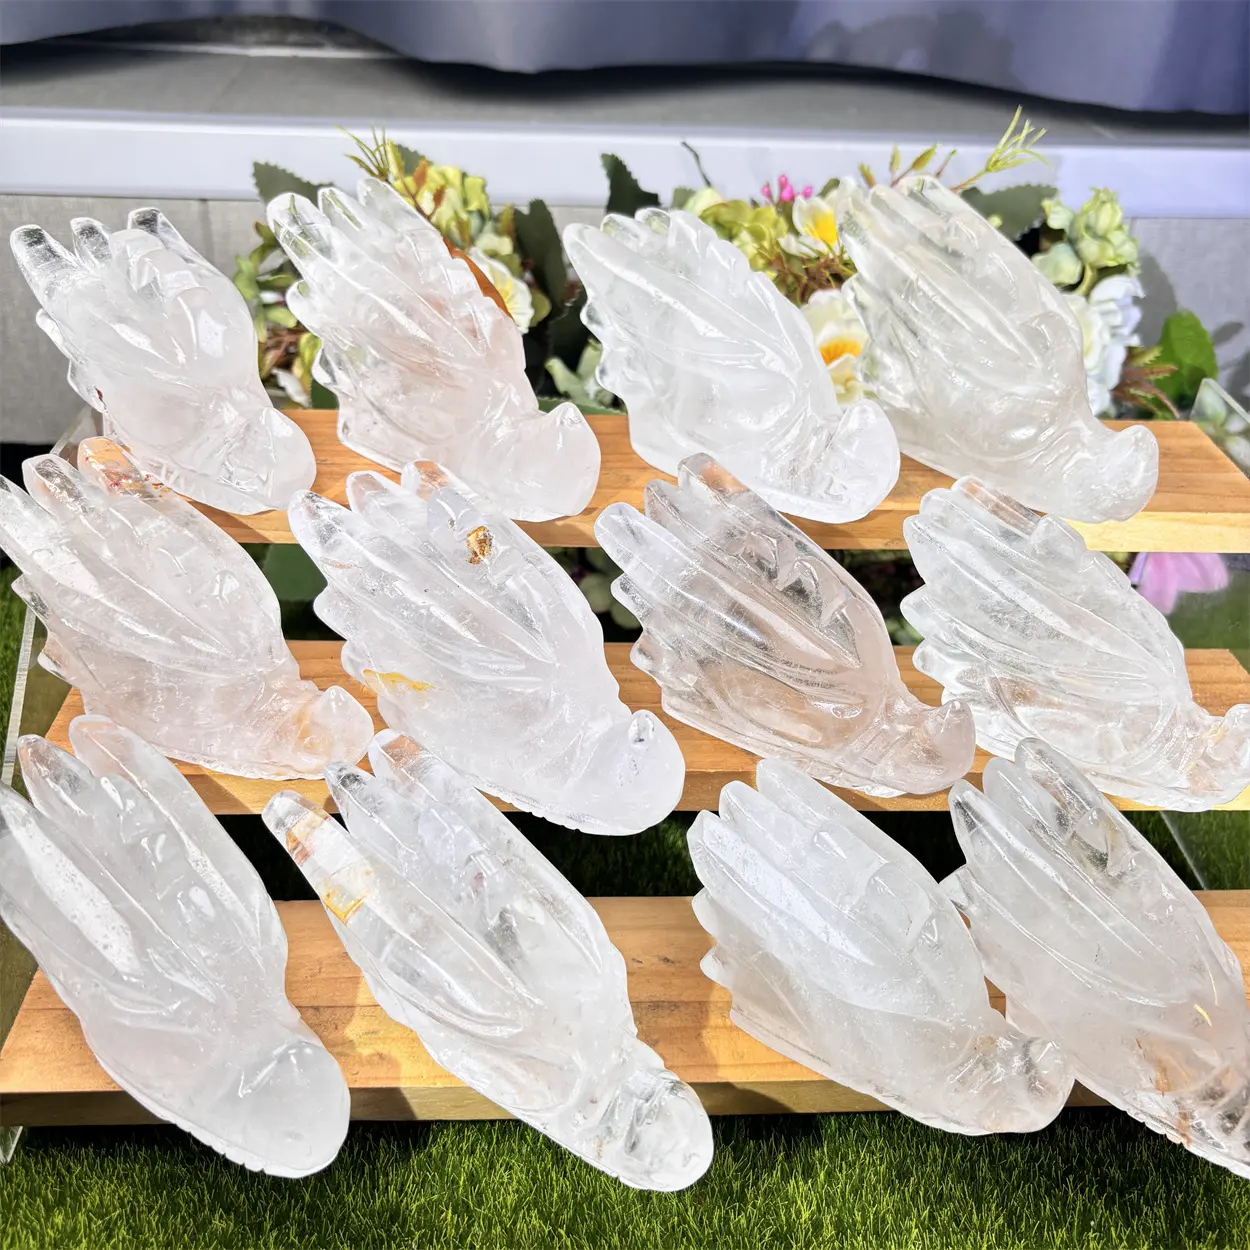 Nuevos artículos Piedras preciosas naturales Piedras de cristal curativas Cabezas de dragón de cuarzo transparente Calaveras talladas en cristal Fengshui